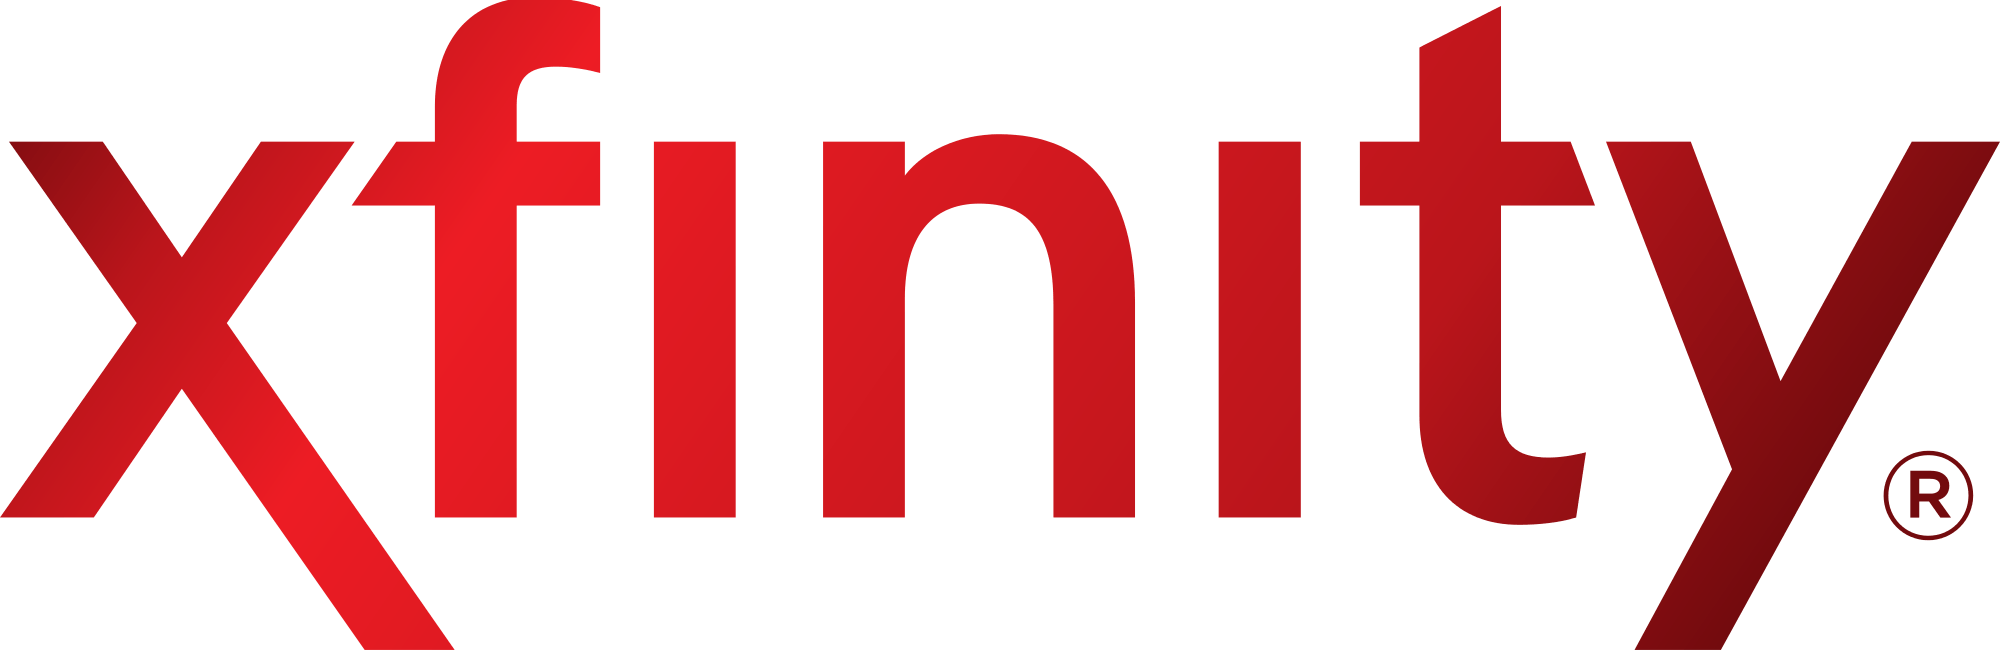 Xfinity Logo - File:Xfinity logo.svg - Wikimedia Commons